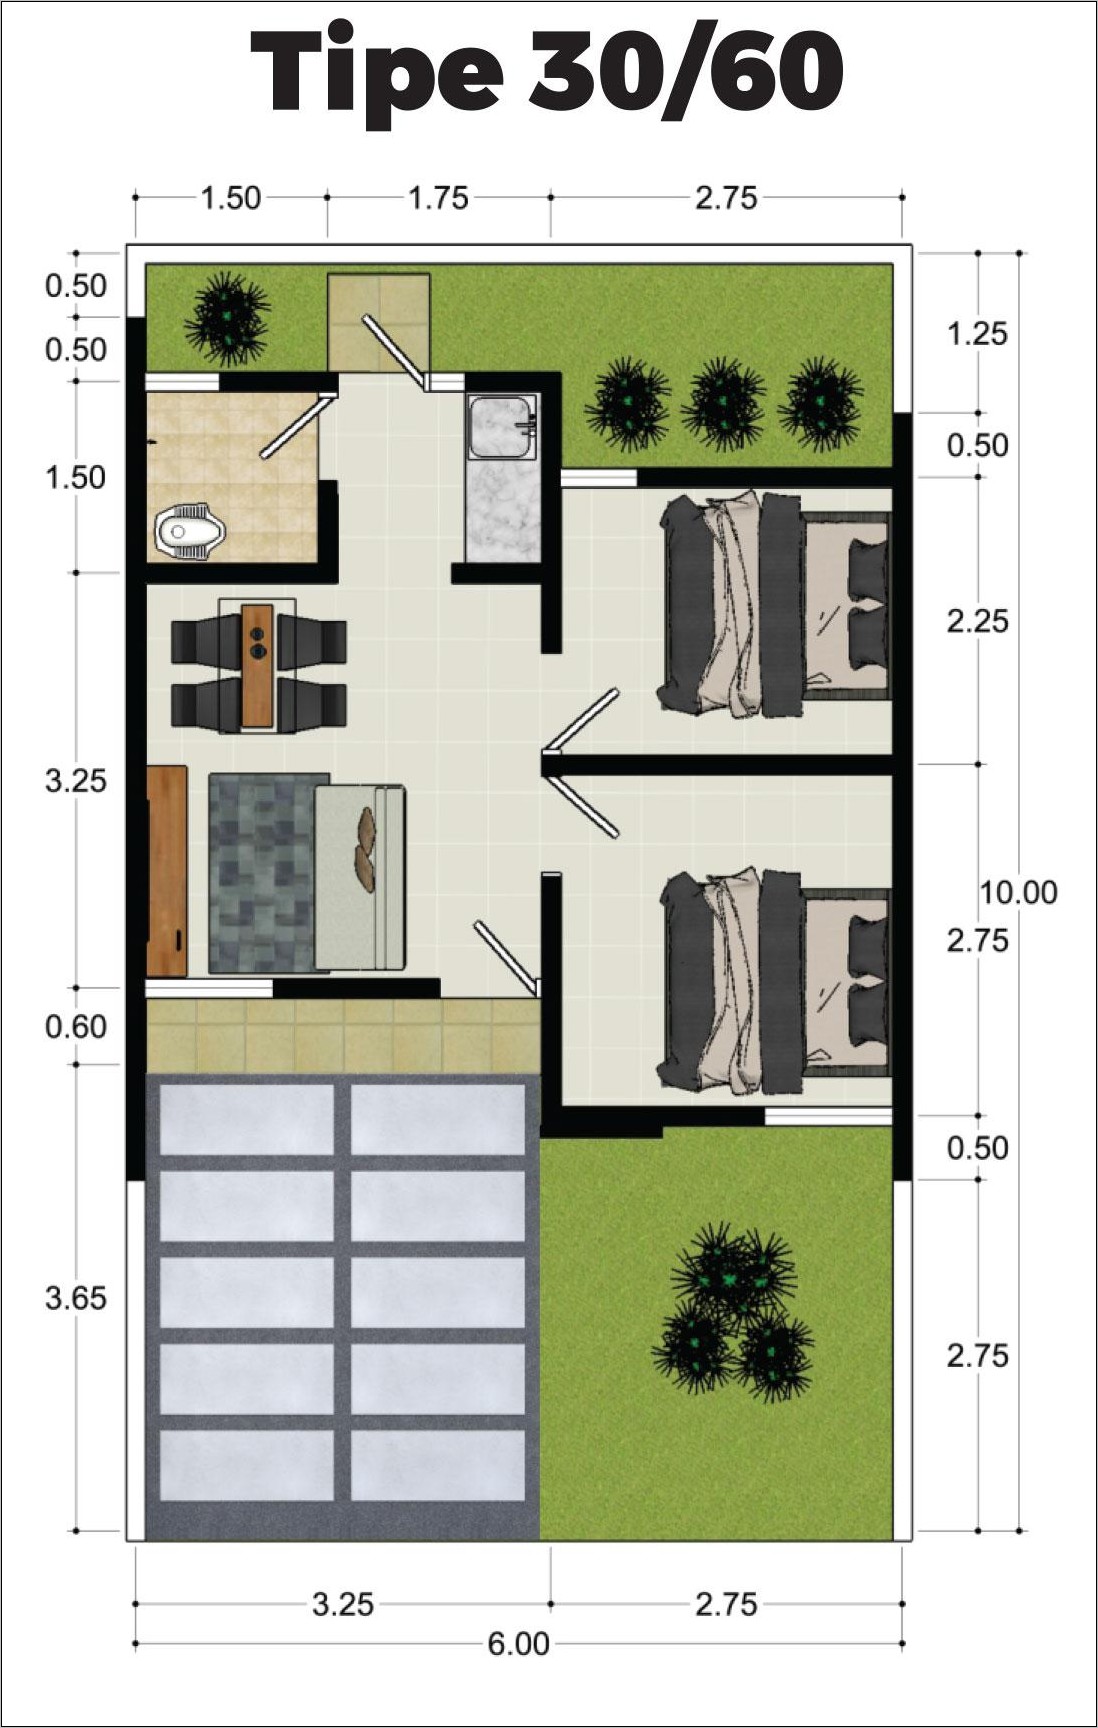 Desain Denah Rumah Subsidi Type 30 60 - Gambar Design Rumah - Denah Rumah Subsidi Type 30 60